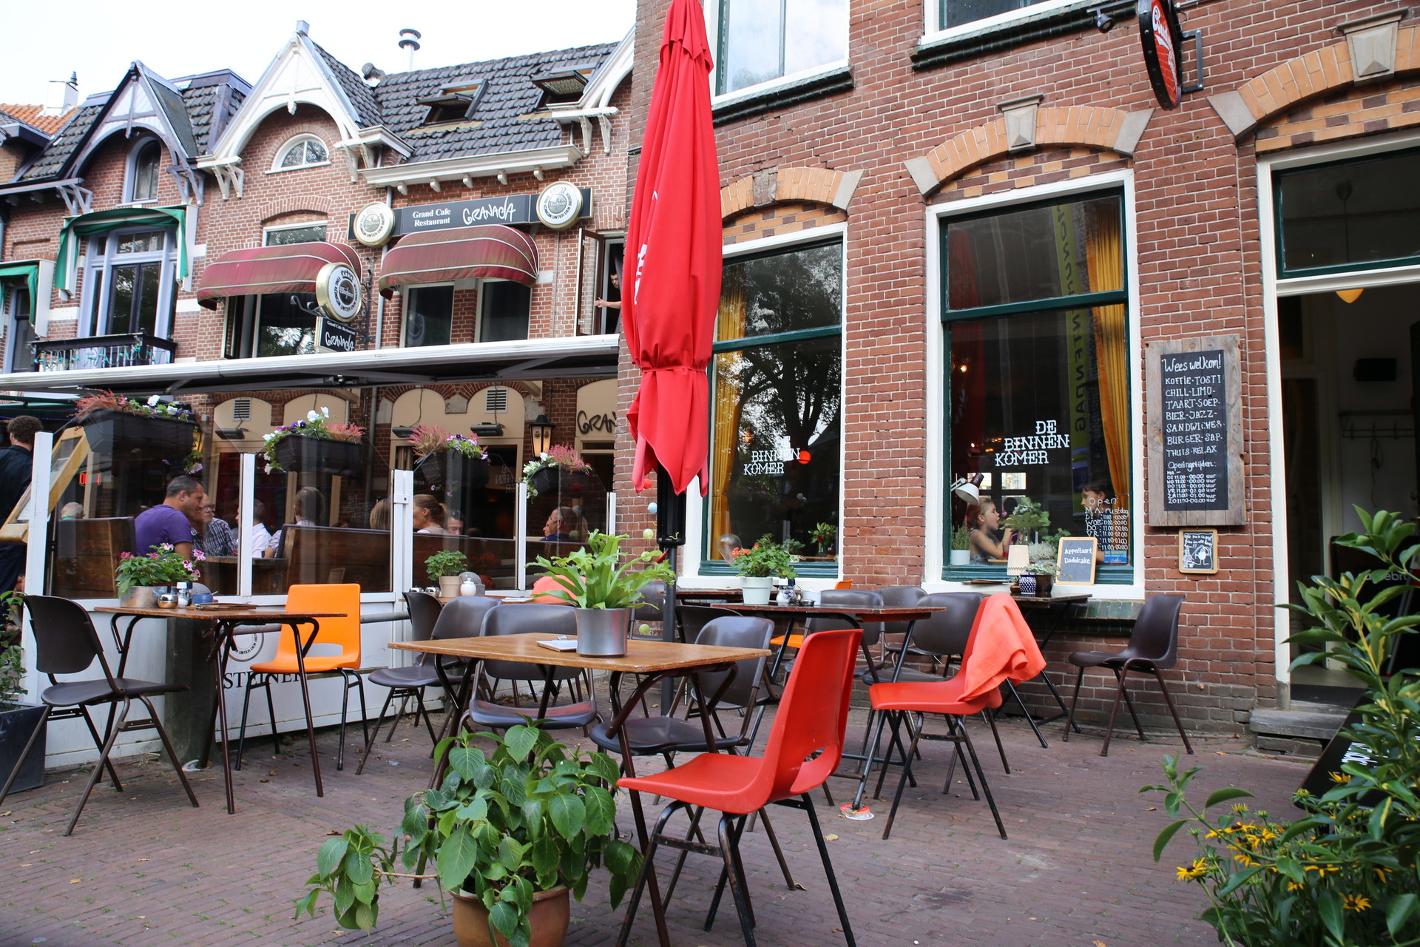 Foto De Binnenkomer in Alkmaar, Eten & drinken, Genieten van lunch, Gezellig borrelen - #1